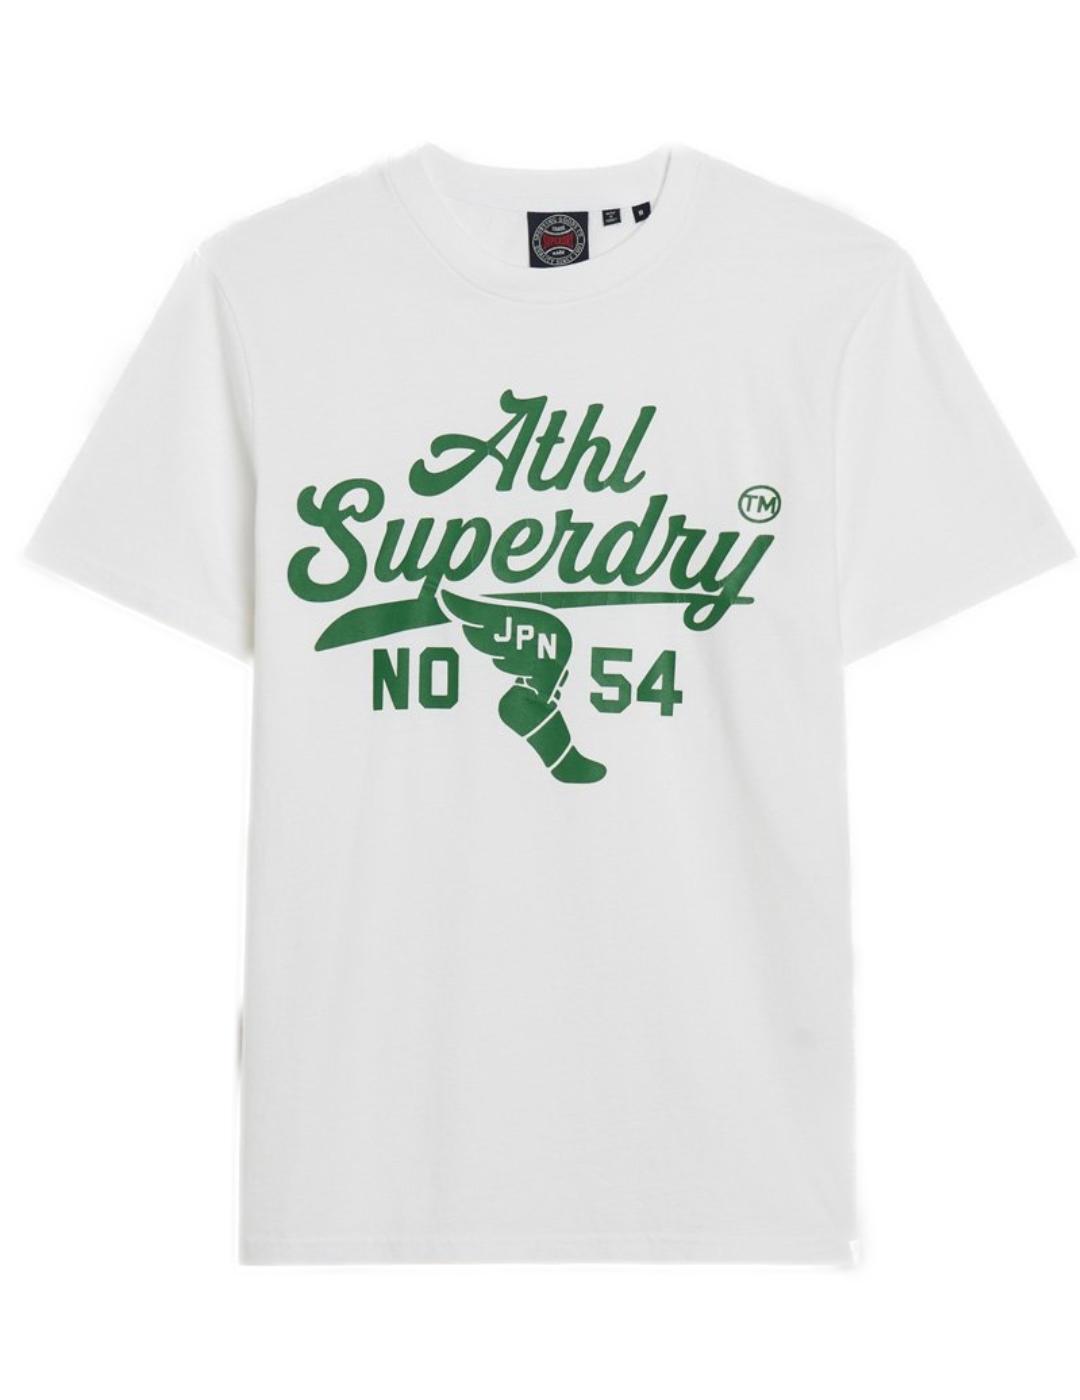 Camiseta Superdry Track blanco y verde manga corta de hombre